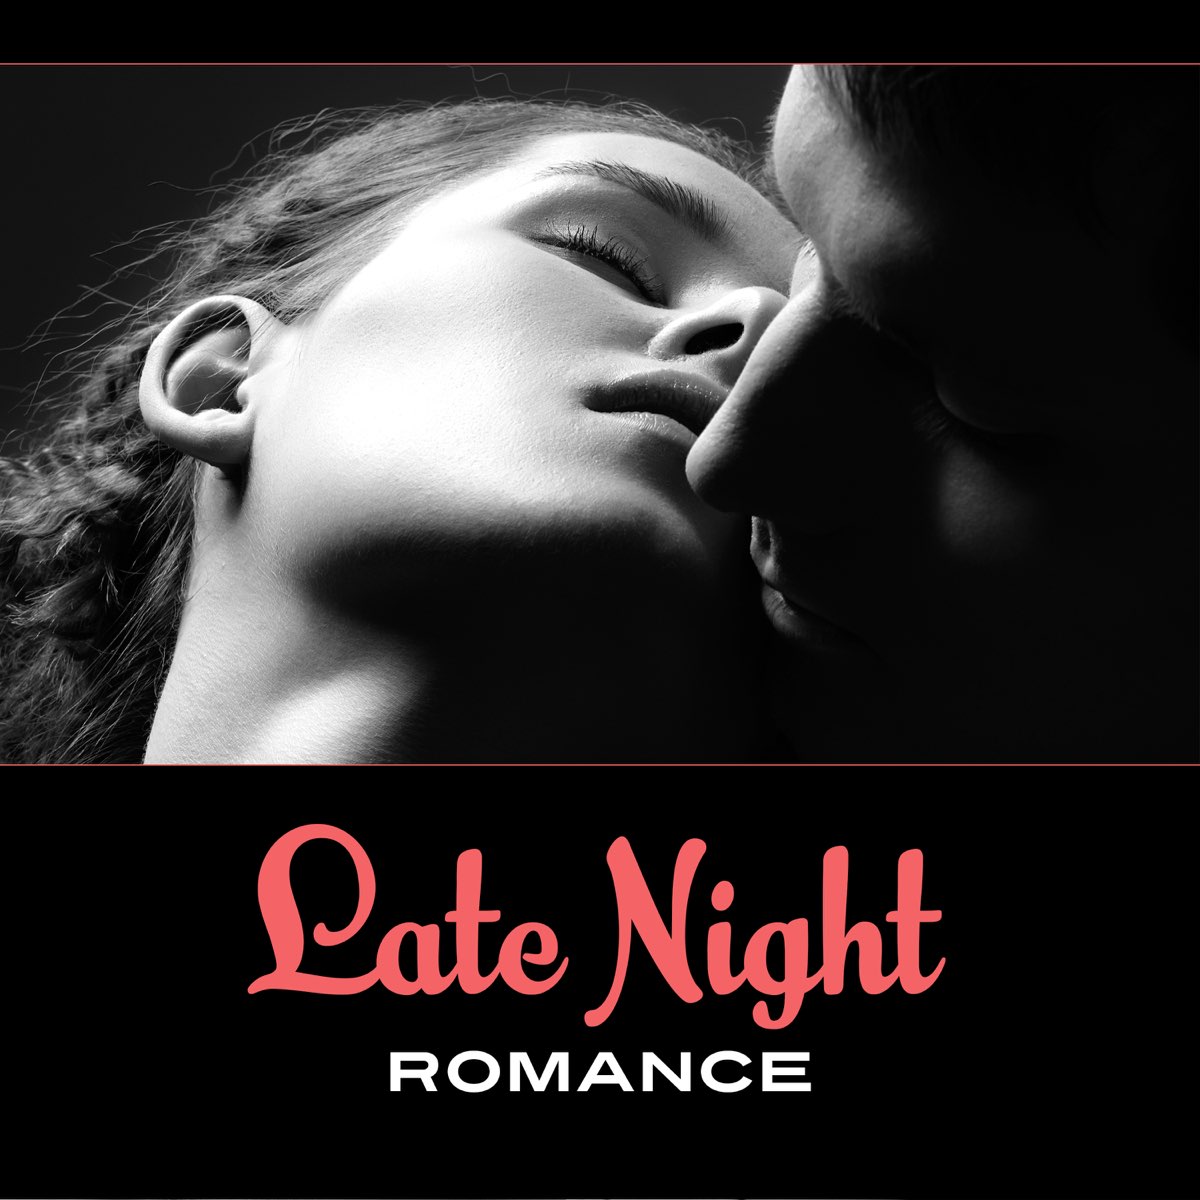 Night romance. Romantic Music.